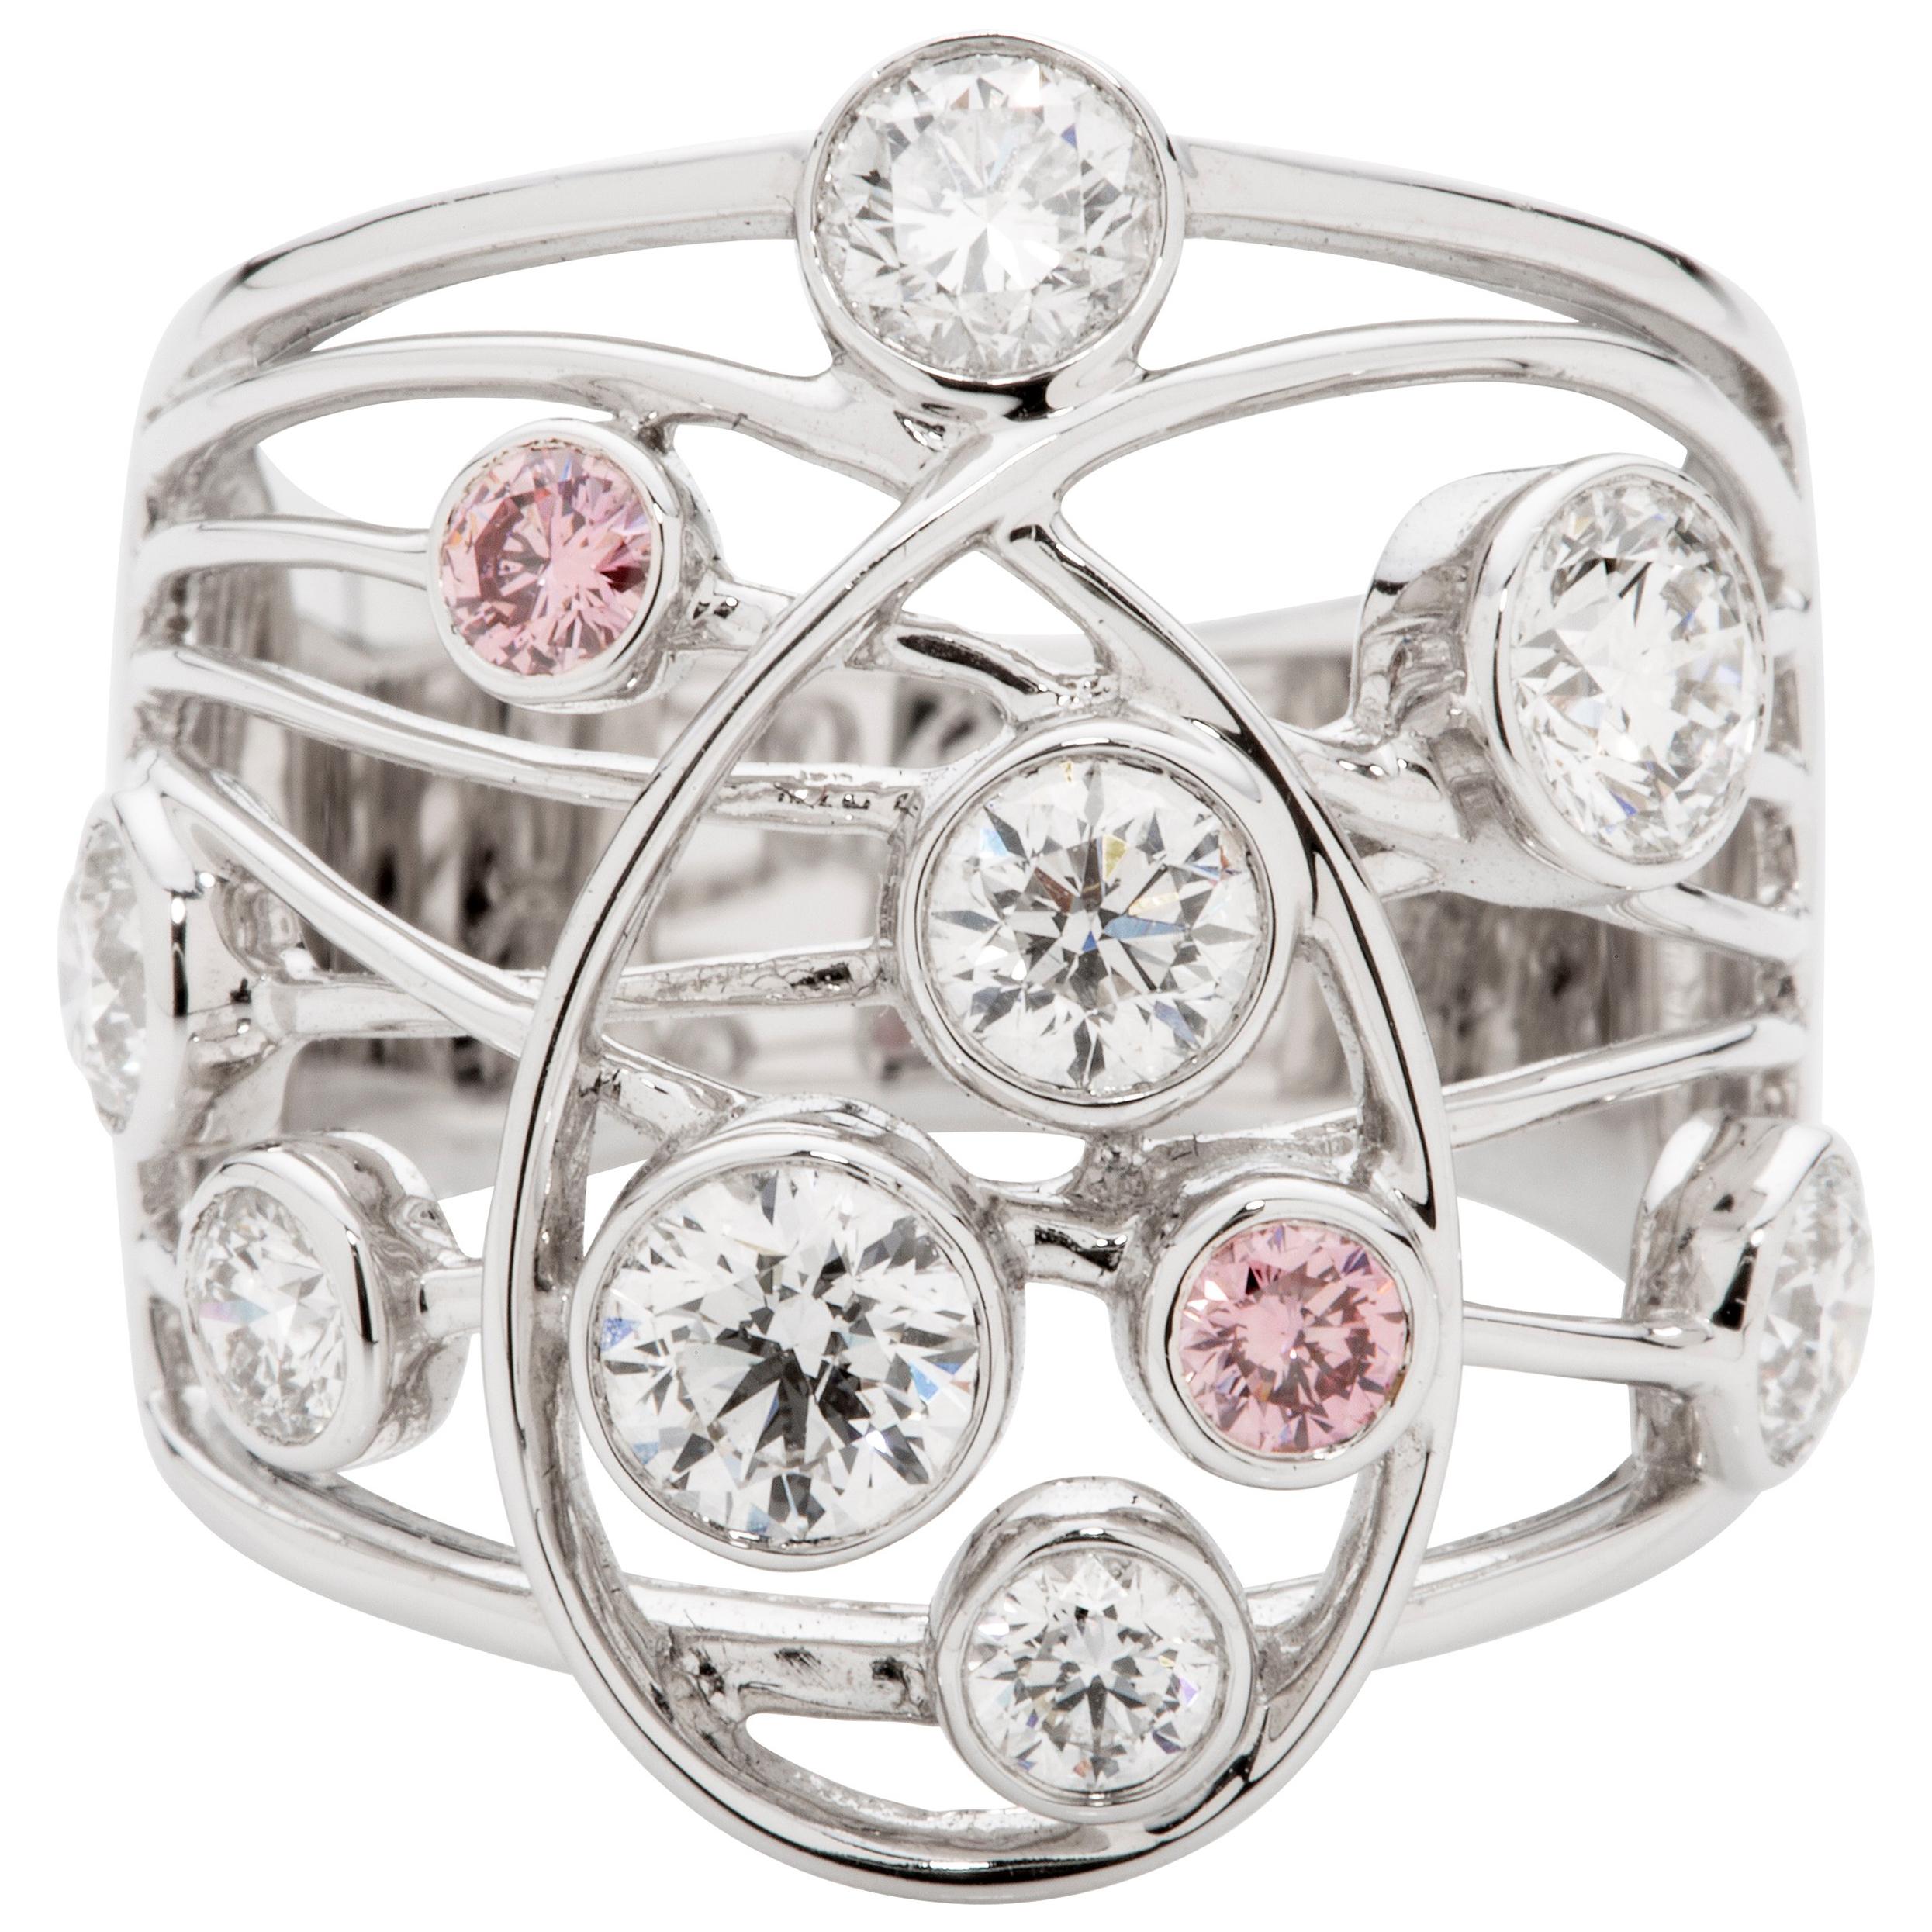 Pink and White Diamond 18 Karat White Gold Dress Ring